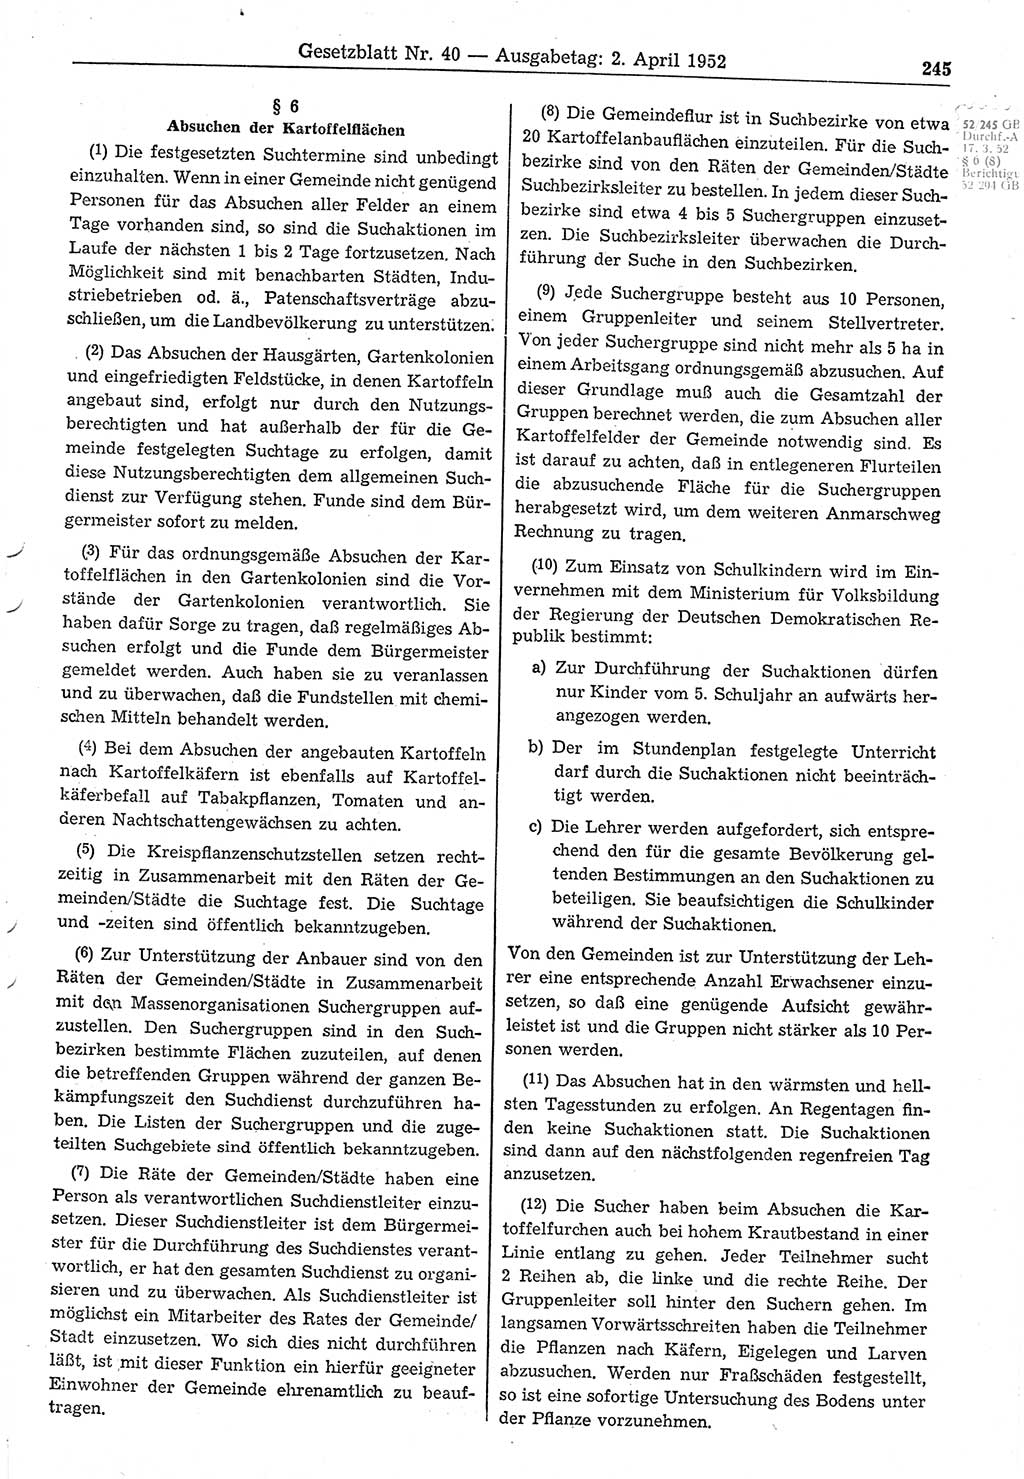 Gesetzblatt (GBl.) der Deutschen Demokratischen Republik (DDR) 1952, Seite 245 (GBl. DDR 1952, S. 245)